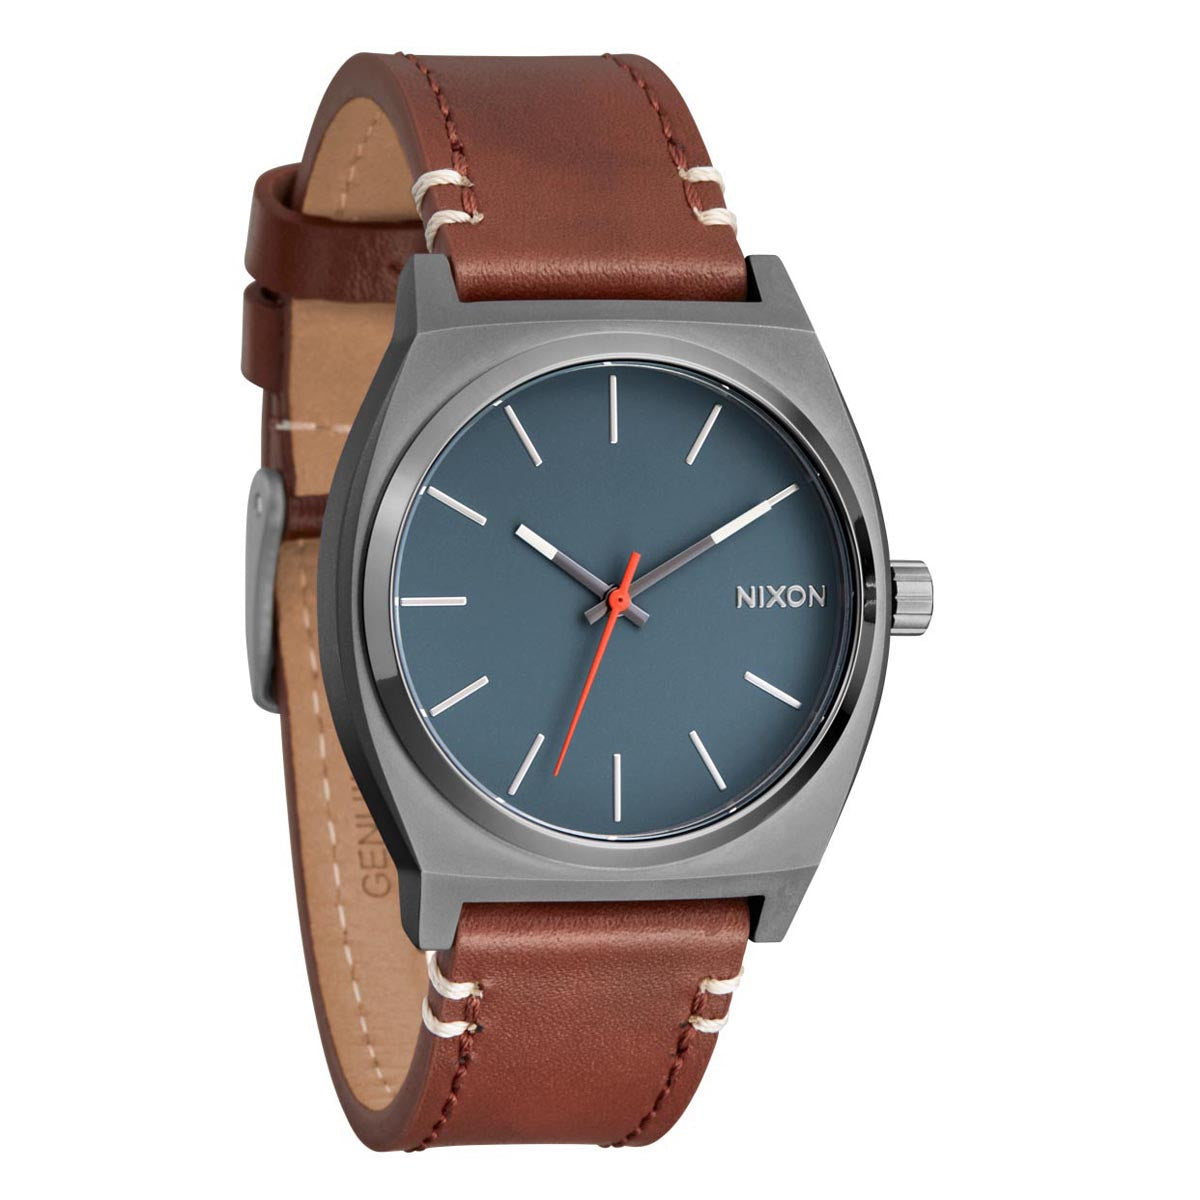 Nixon Time Teller Leather Watch - Light Gunmetal/Basalt/Sienna image 4